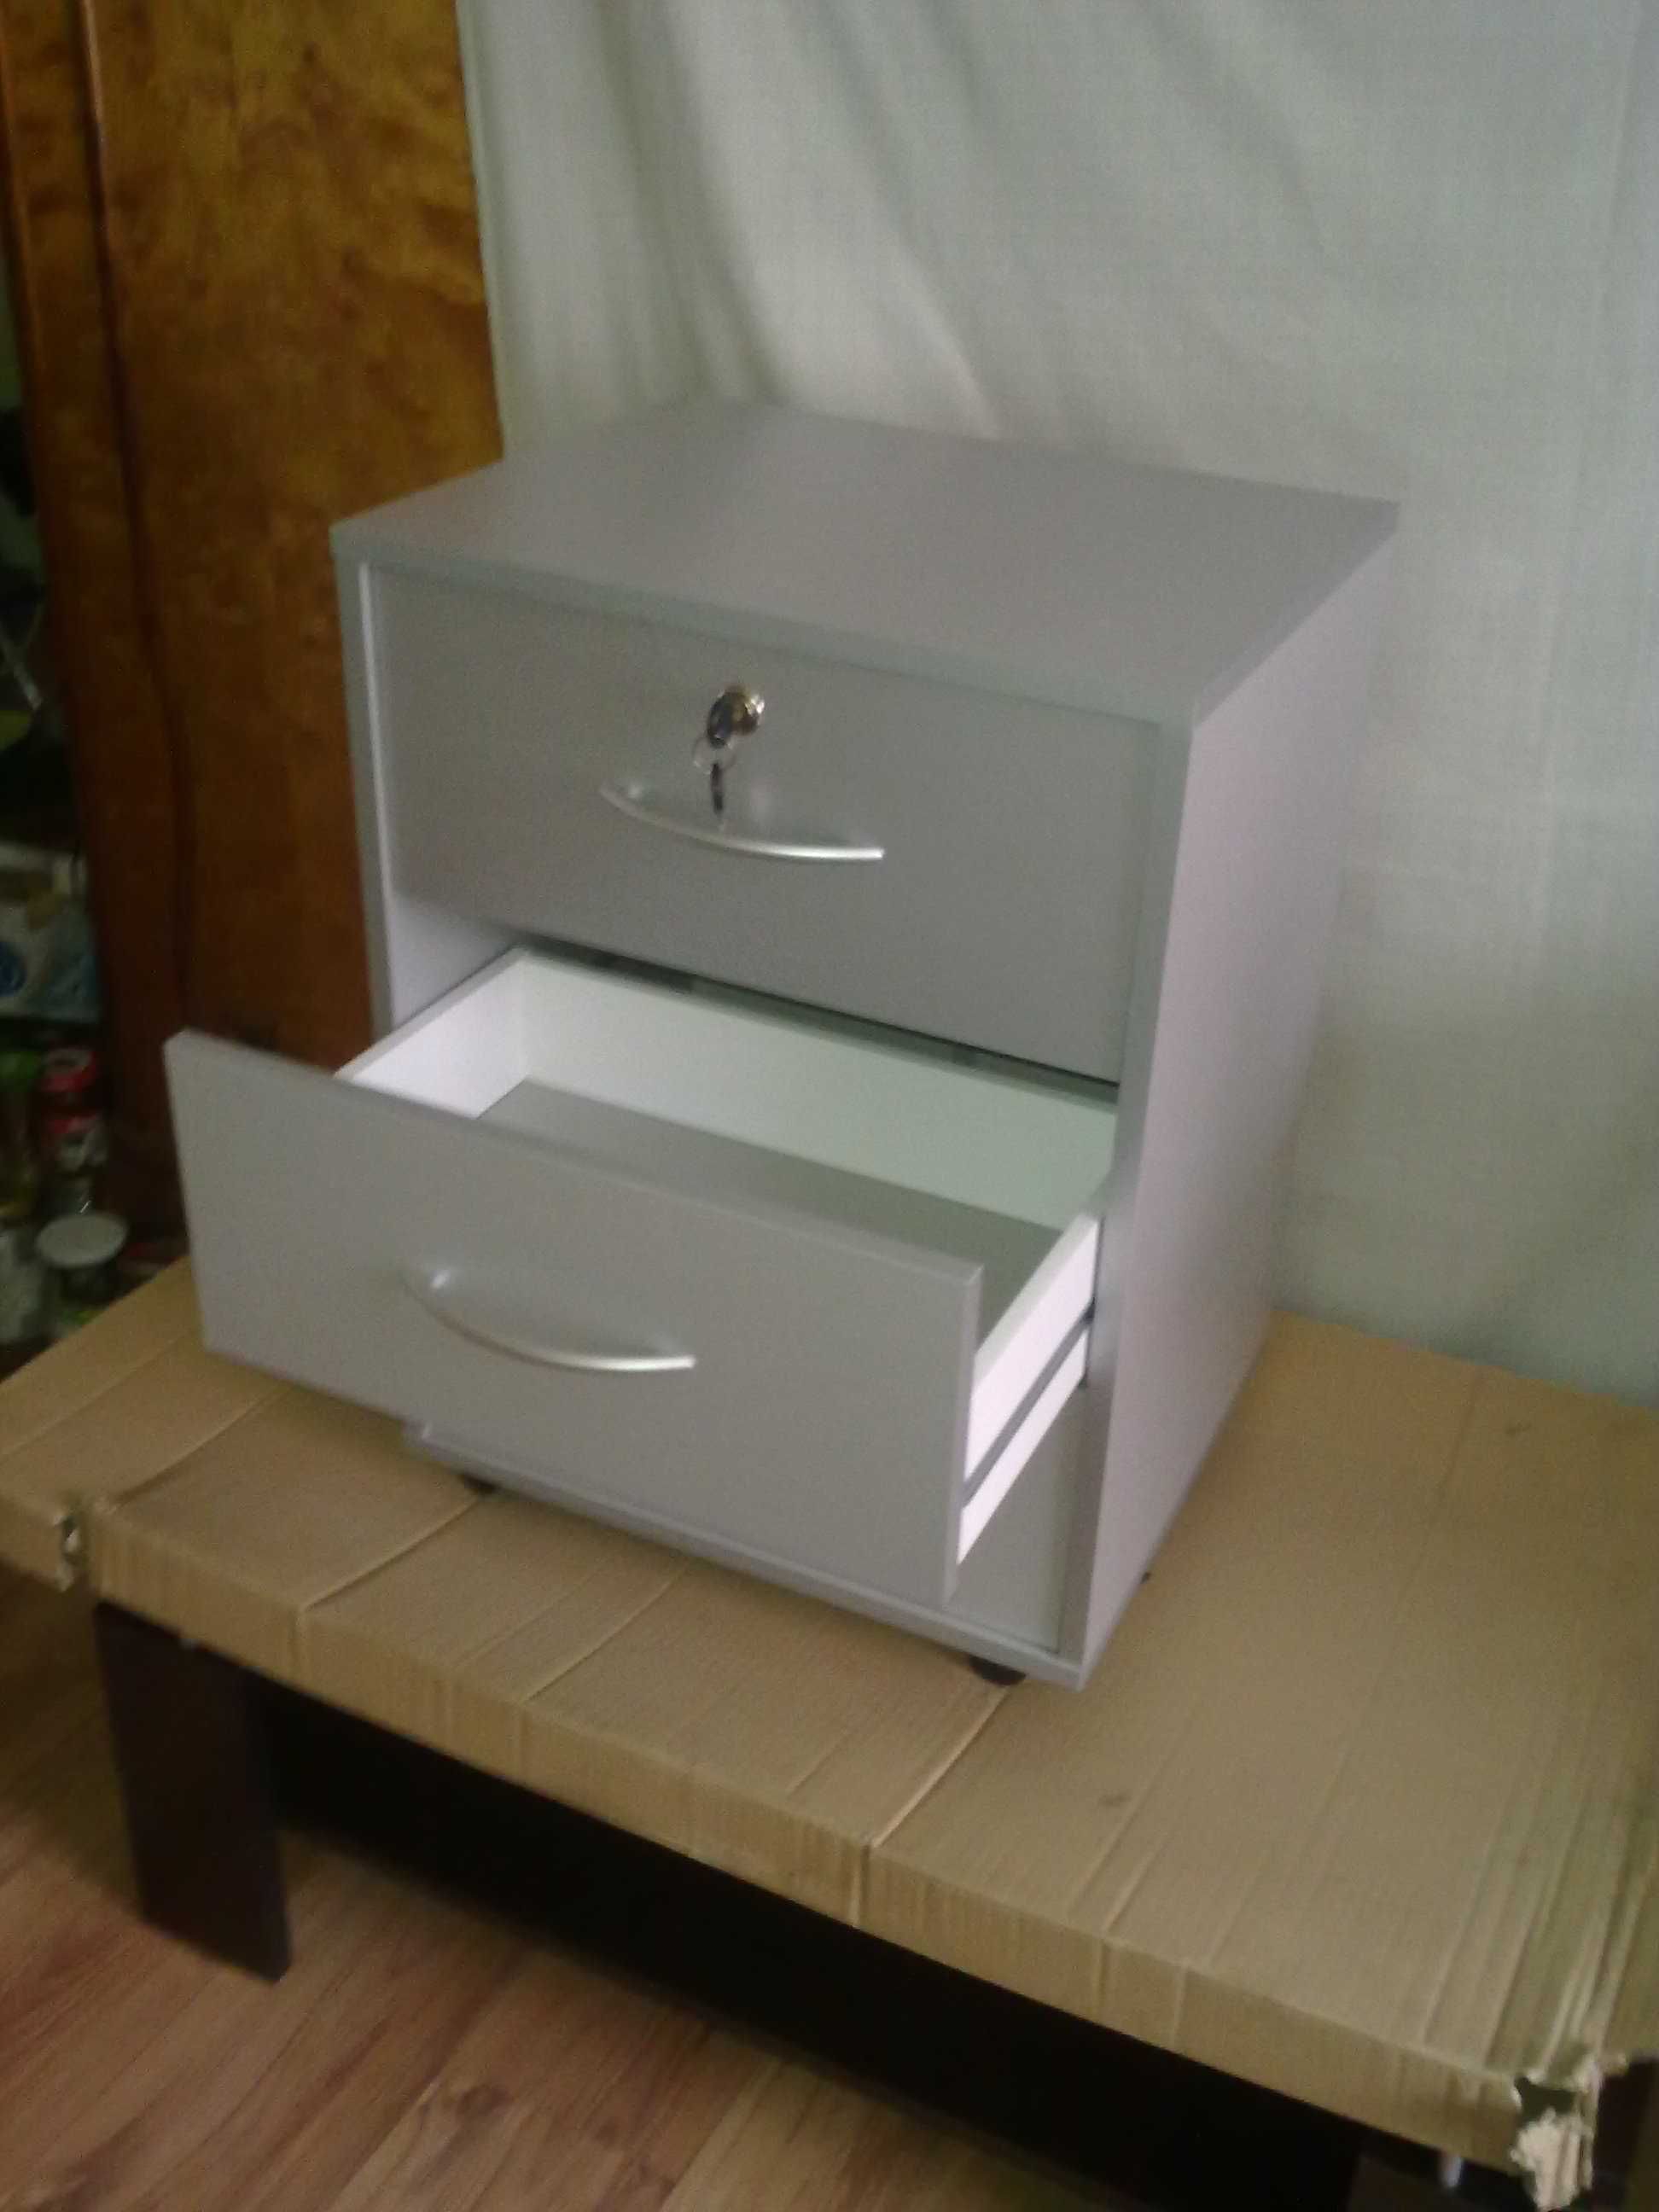 Worky nowy biały kontenerek 3-szuflady